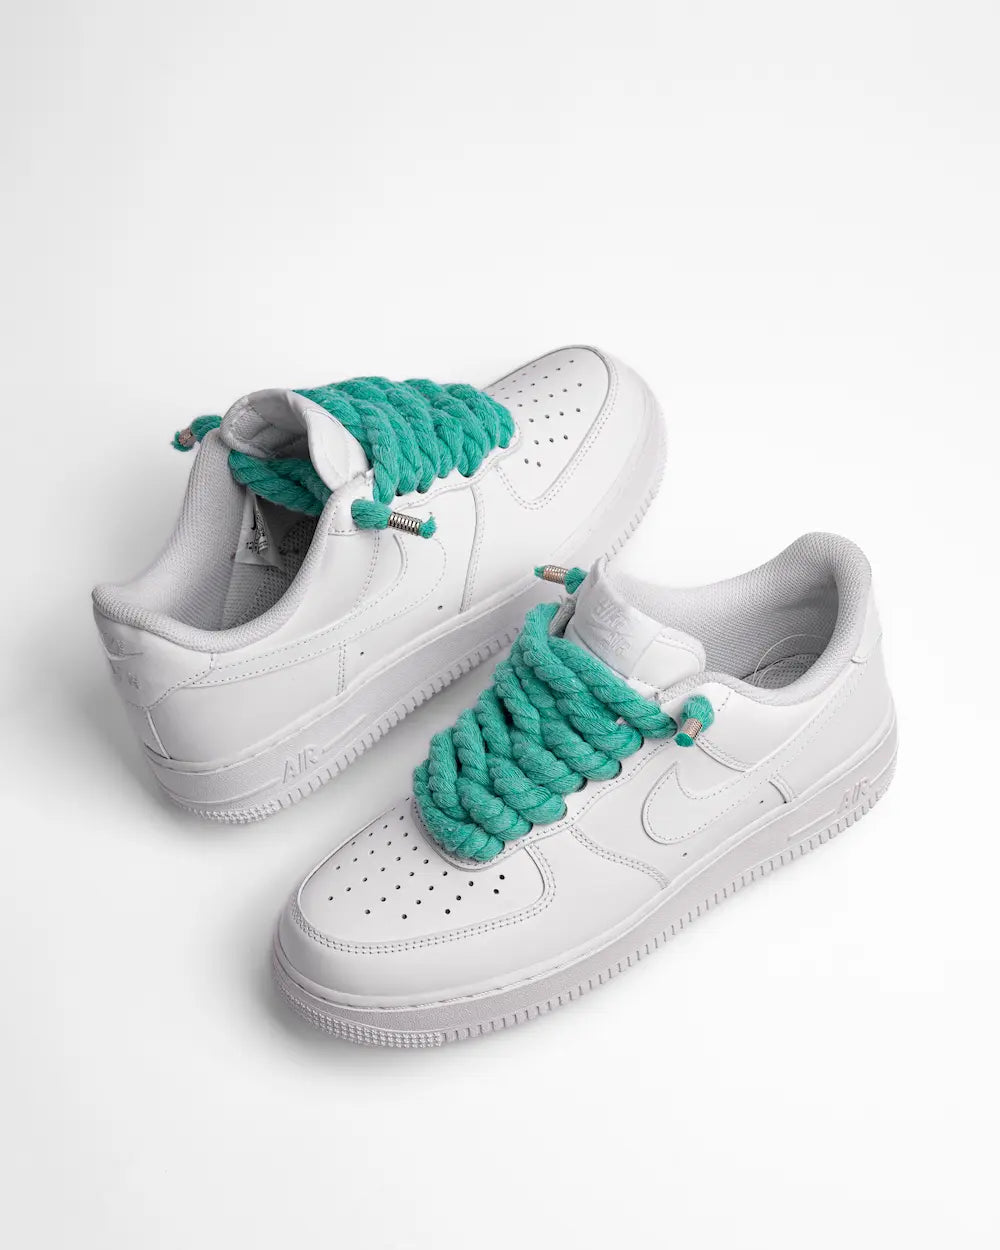 Nike Air Force 1 bianca personalizzata con lacci in corda verde acqua